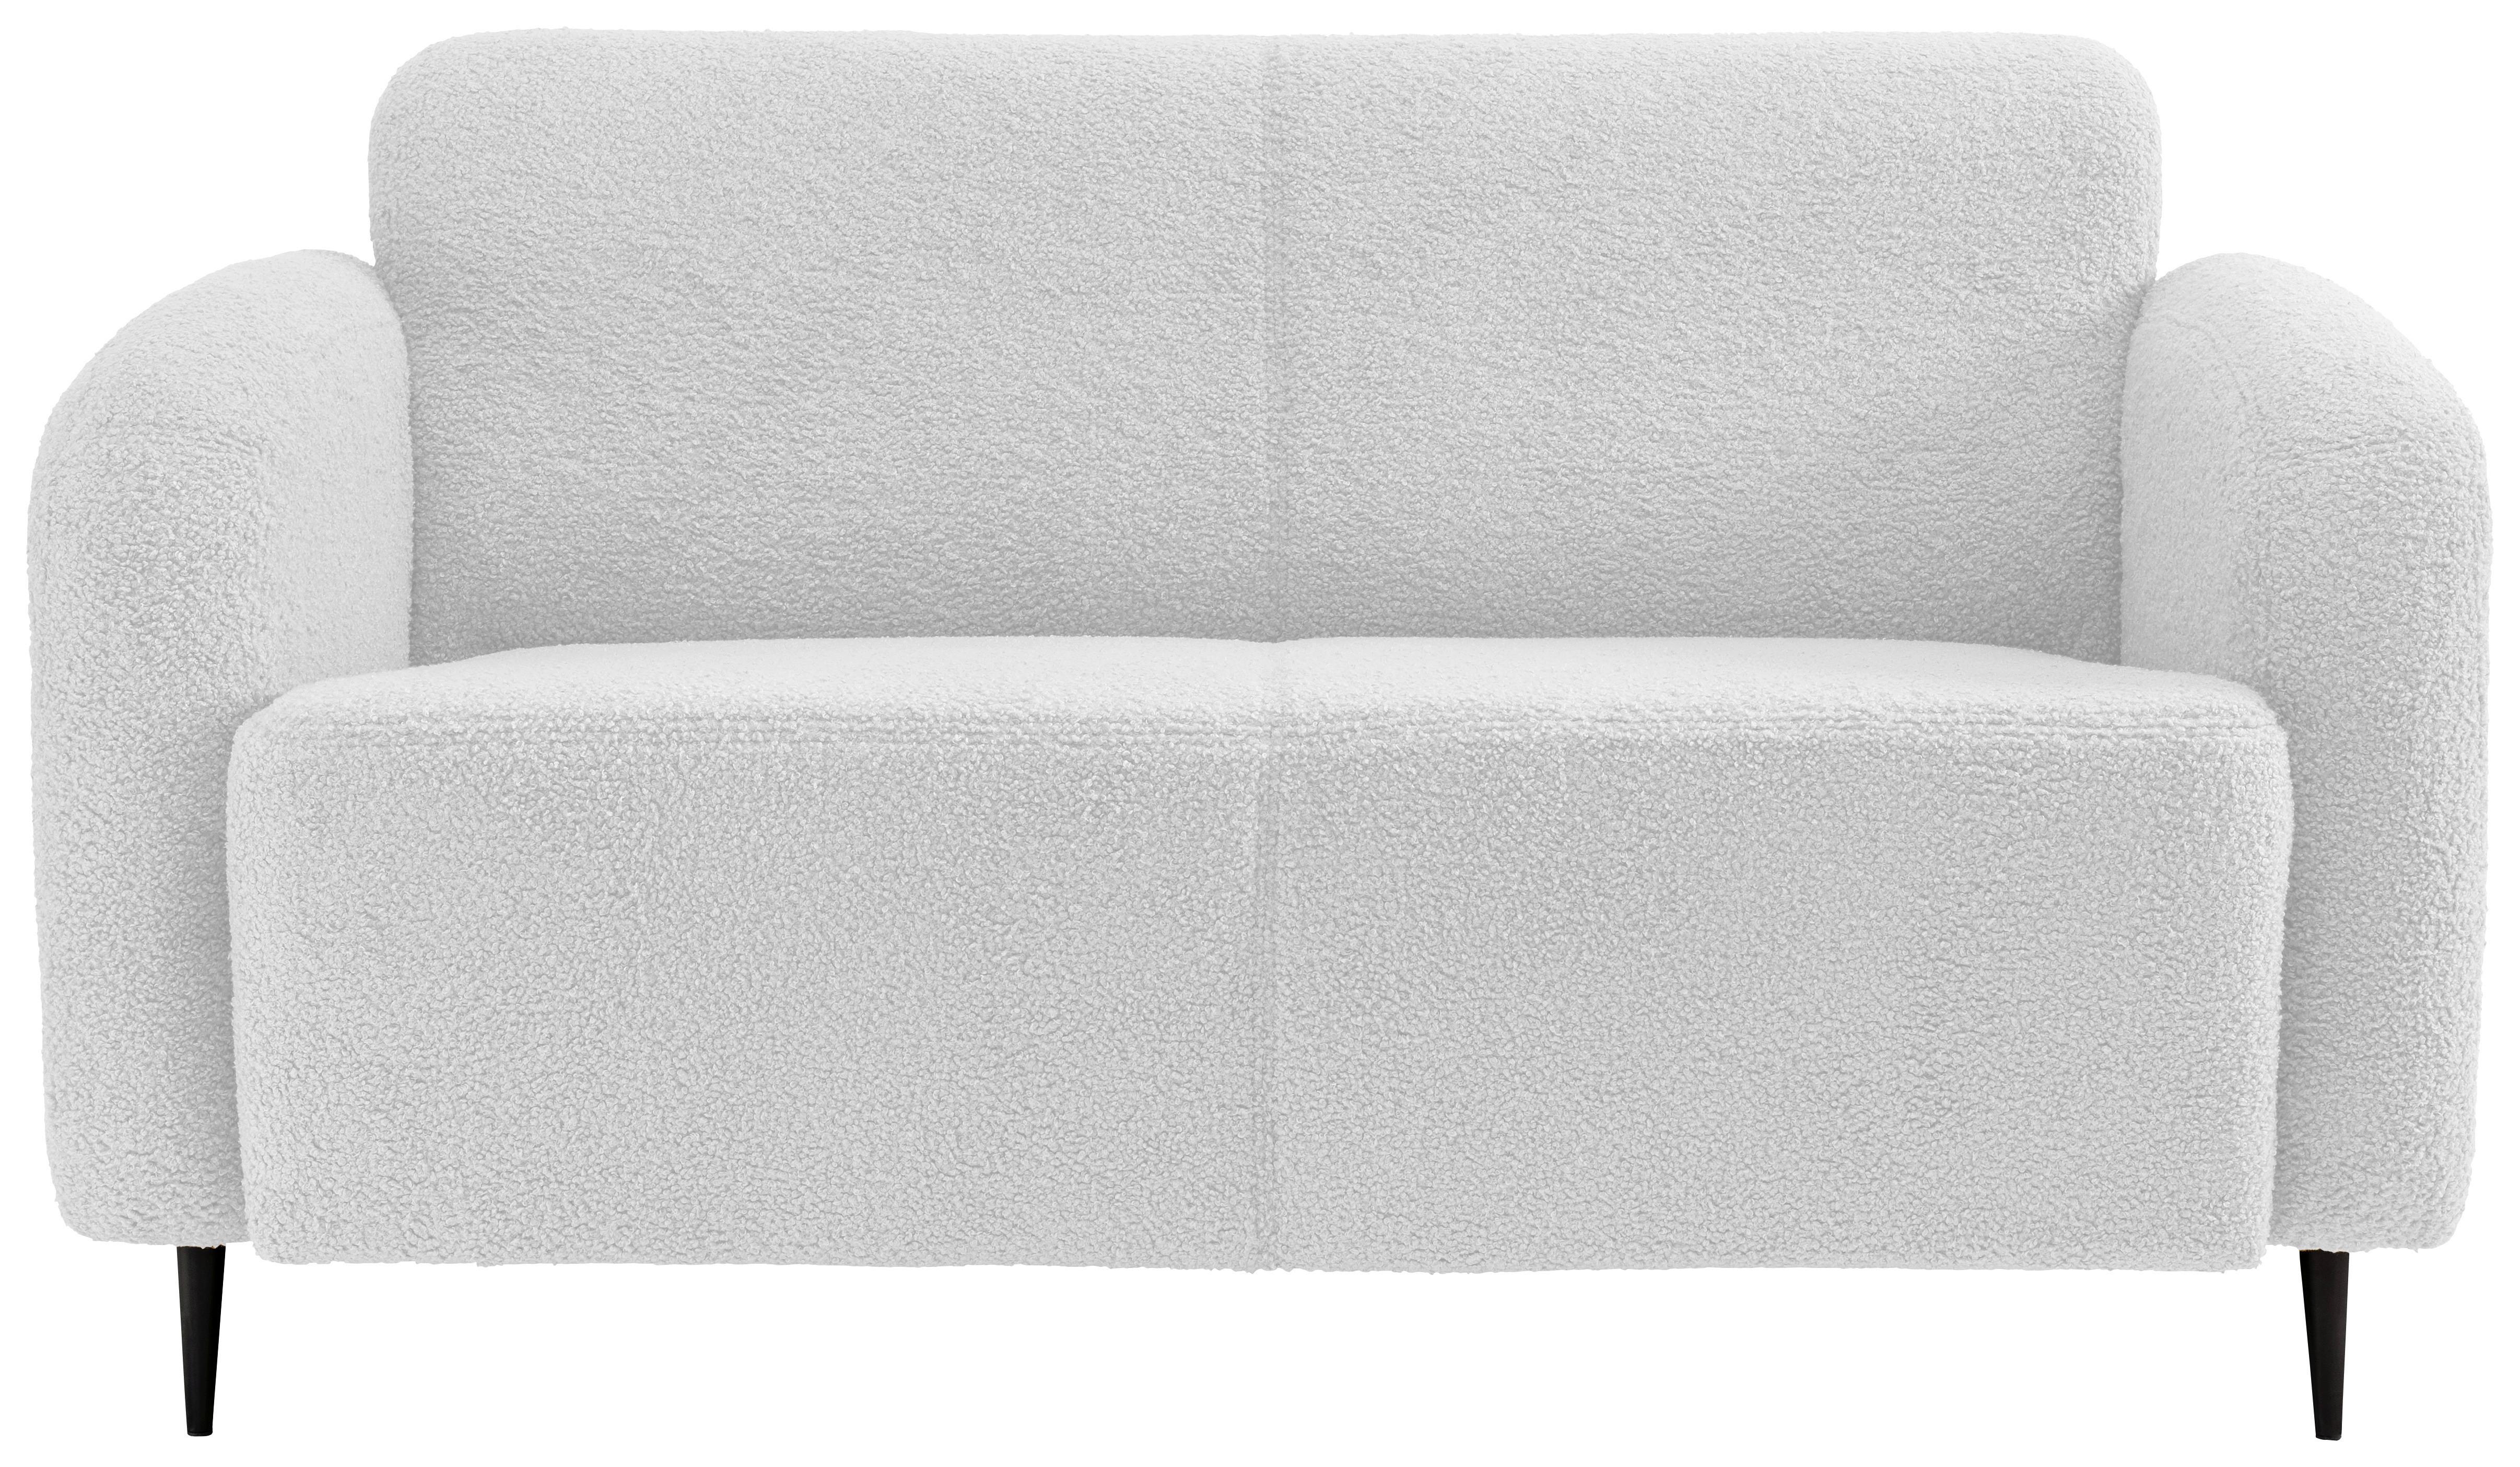 2-Sitzer-Sofa Marone Weiß Teddystoff - Schwarz/Weiß, MODERN, Textil/Metall (140/76/90cm) - Livetastic